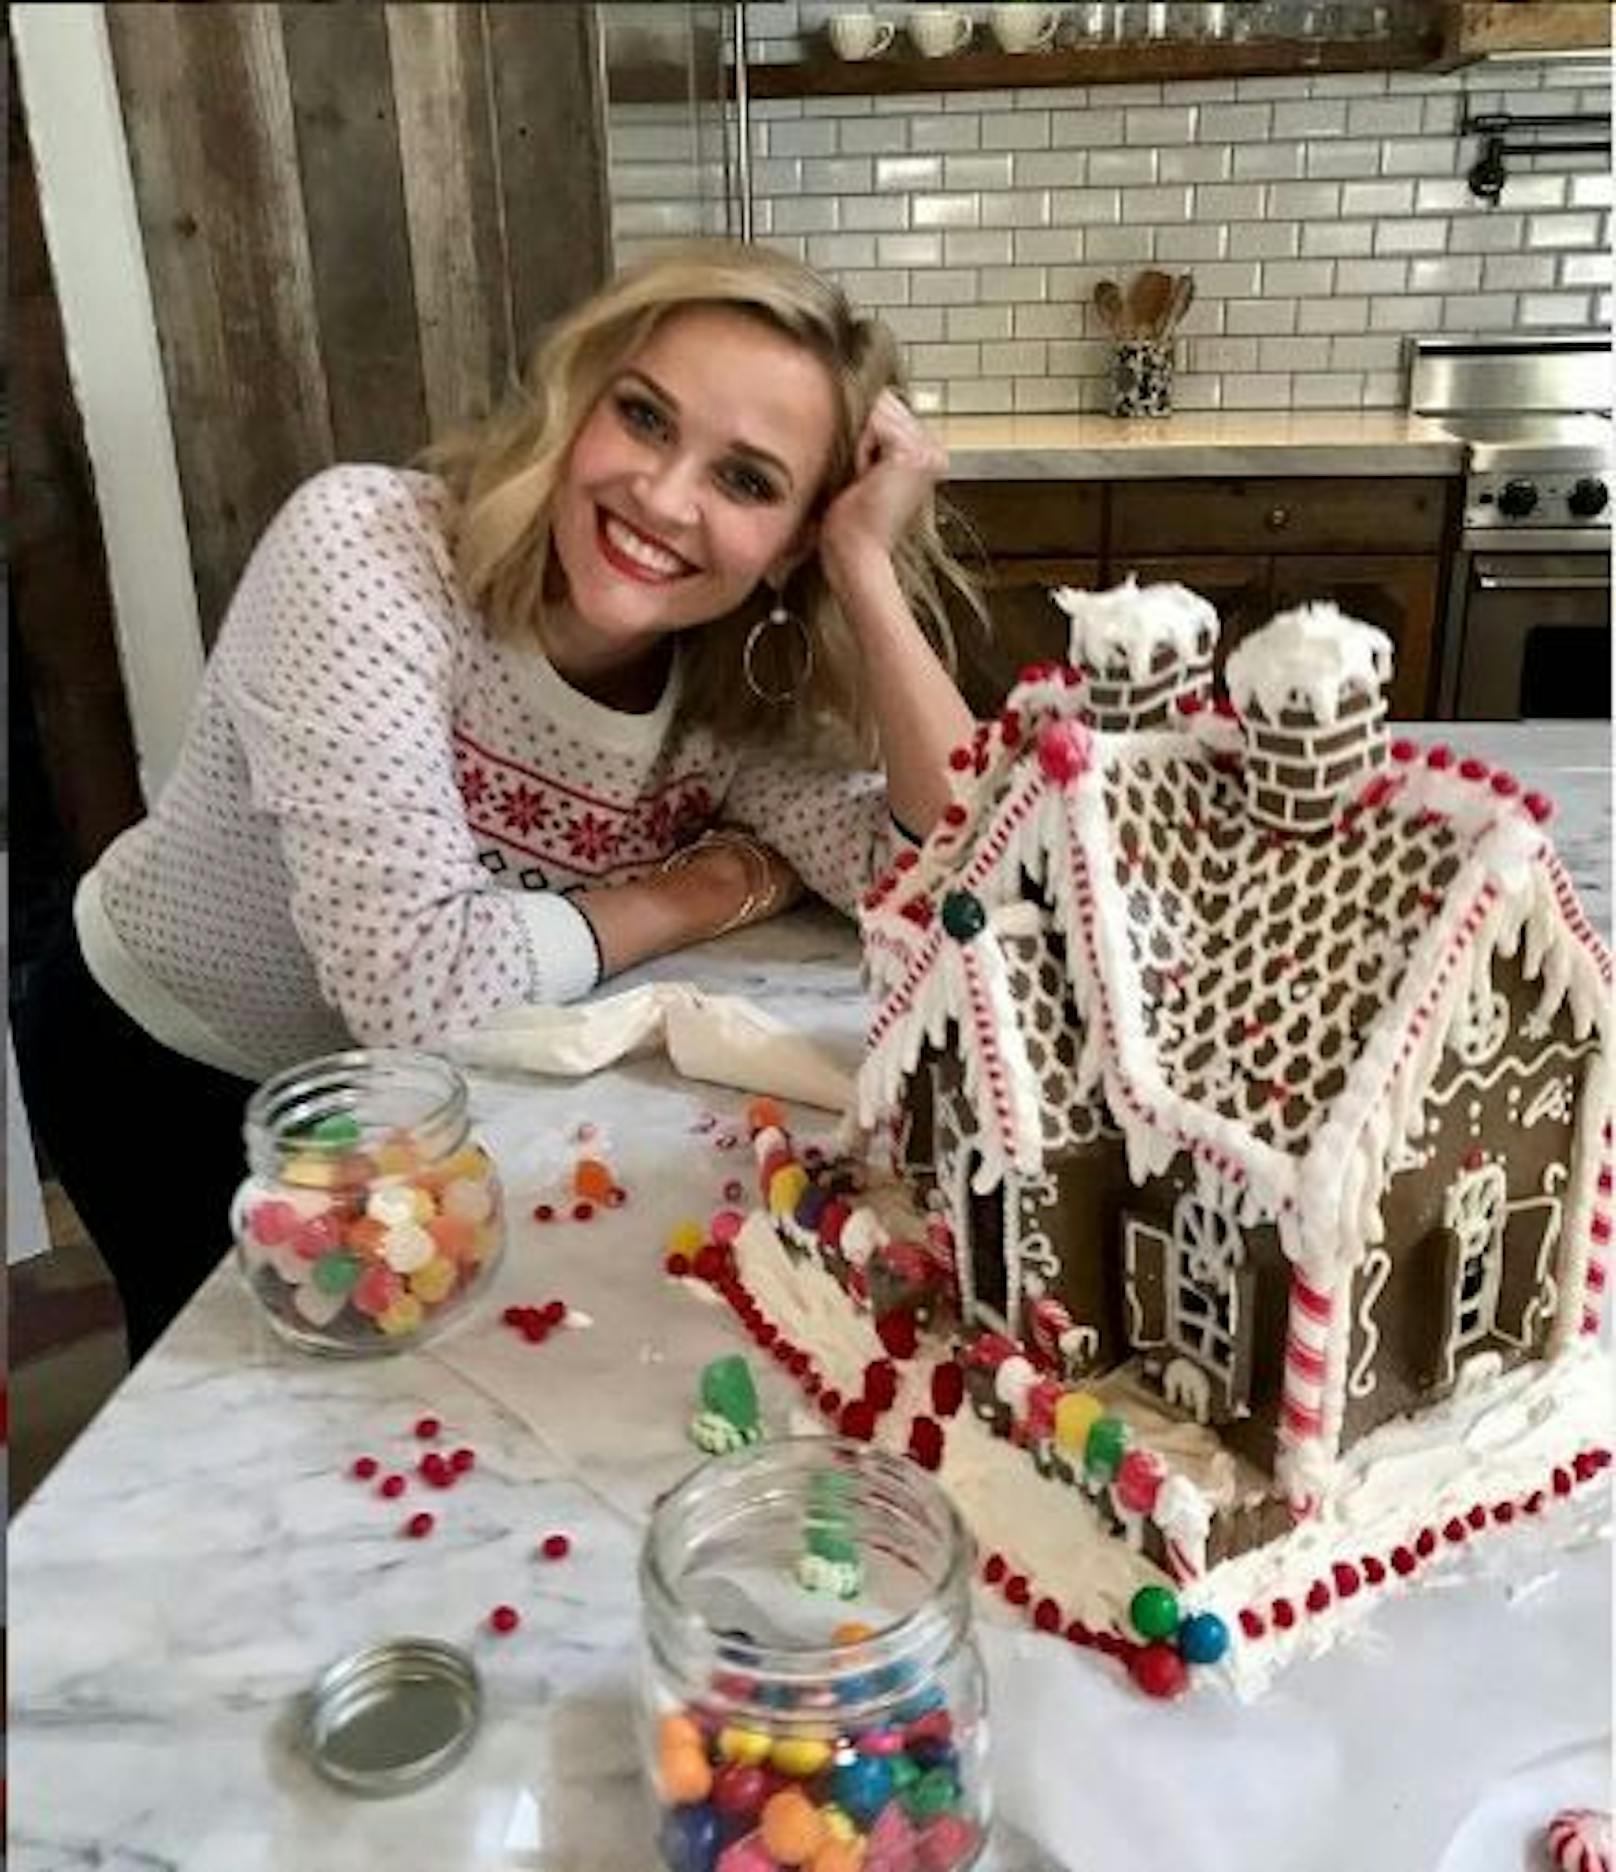 16.12.2020: Zusammen mit ihren Kids backt Oscarpreisträgerin <strong>Reese Witherspoon</strong> zu Weihnachten ein Knusperhäuschen aus Lebkuchen. Die süße Dekoration vernascht sie dabei aber am liebsten gleich, wie sie ihrer Instagram-Fangemeinde verrät.